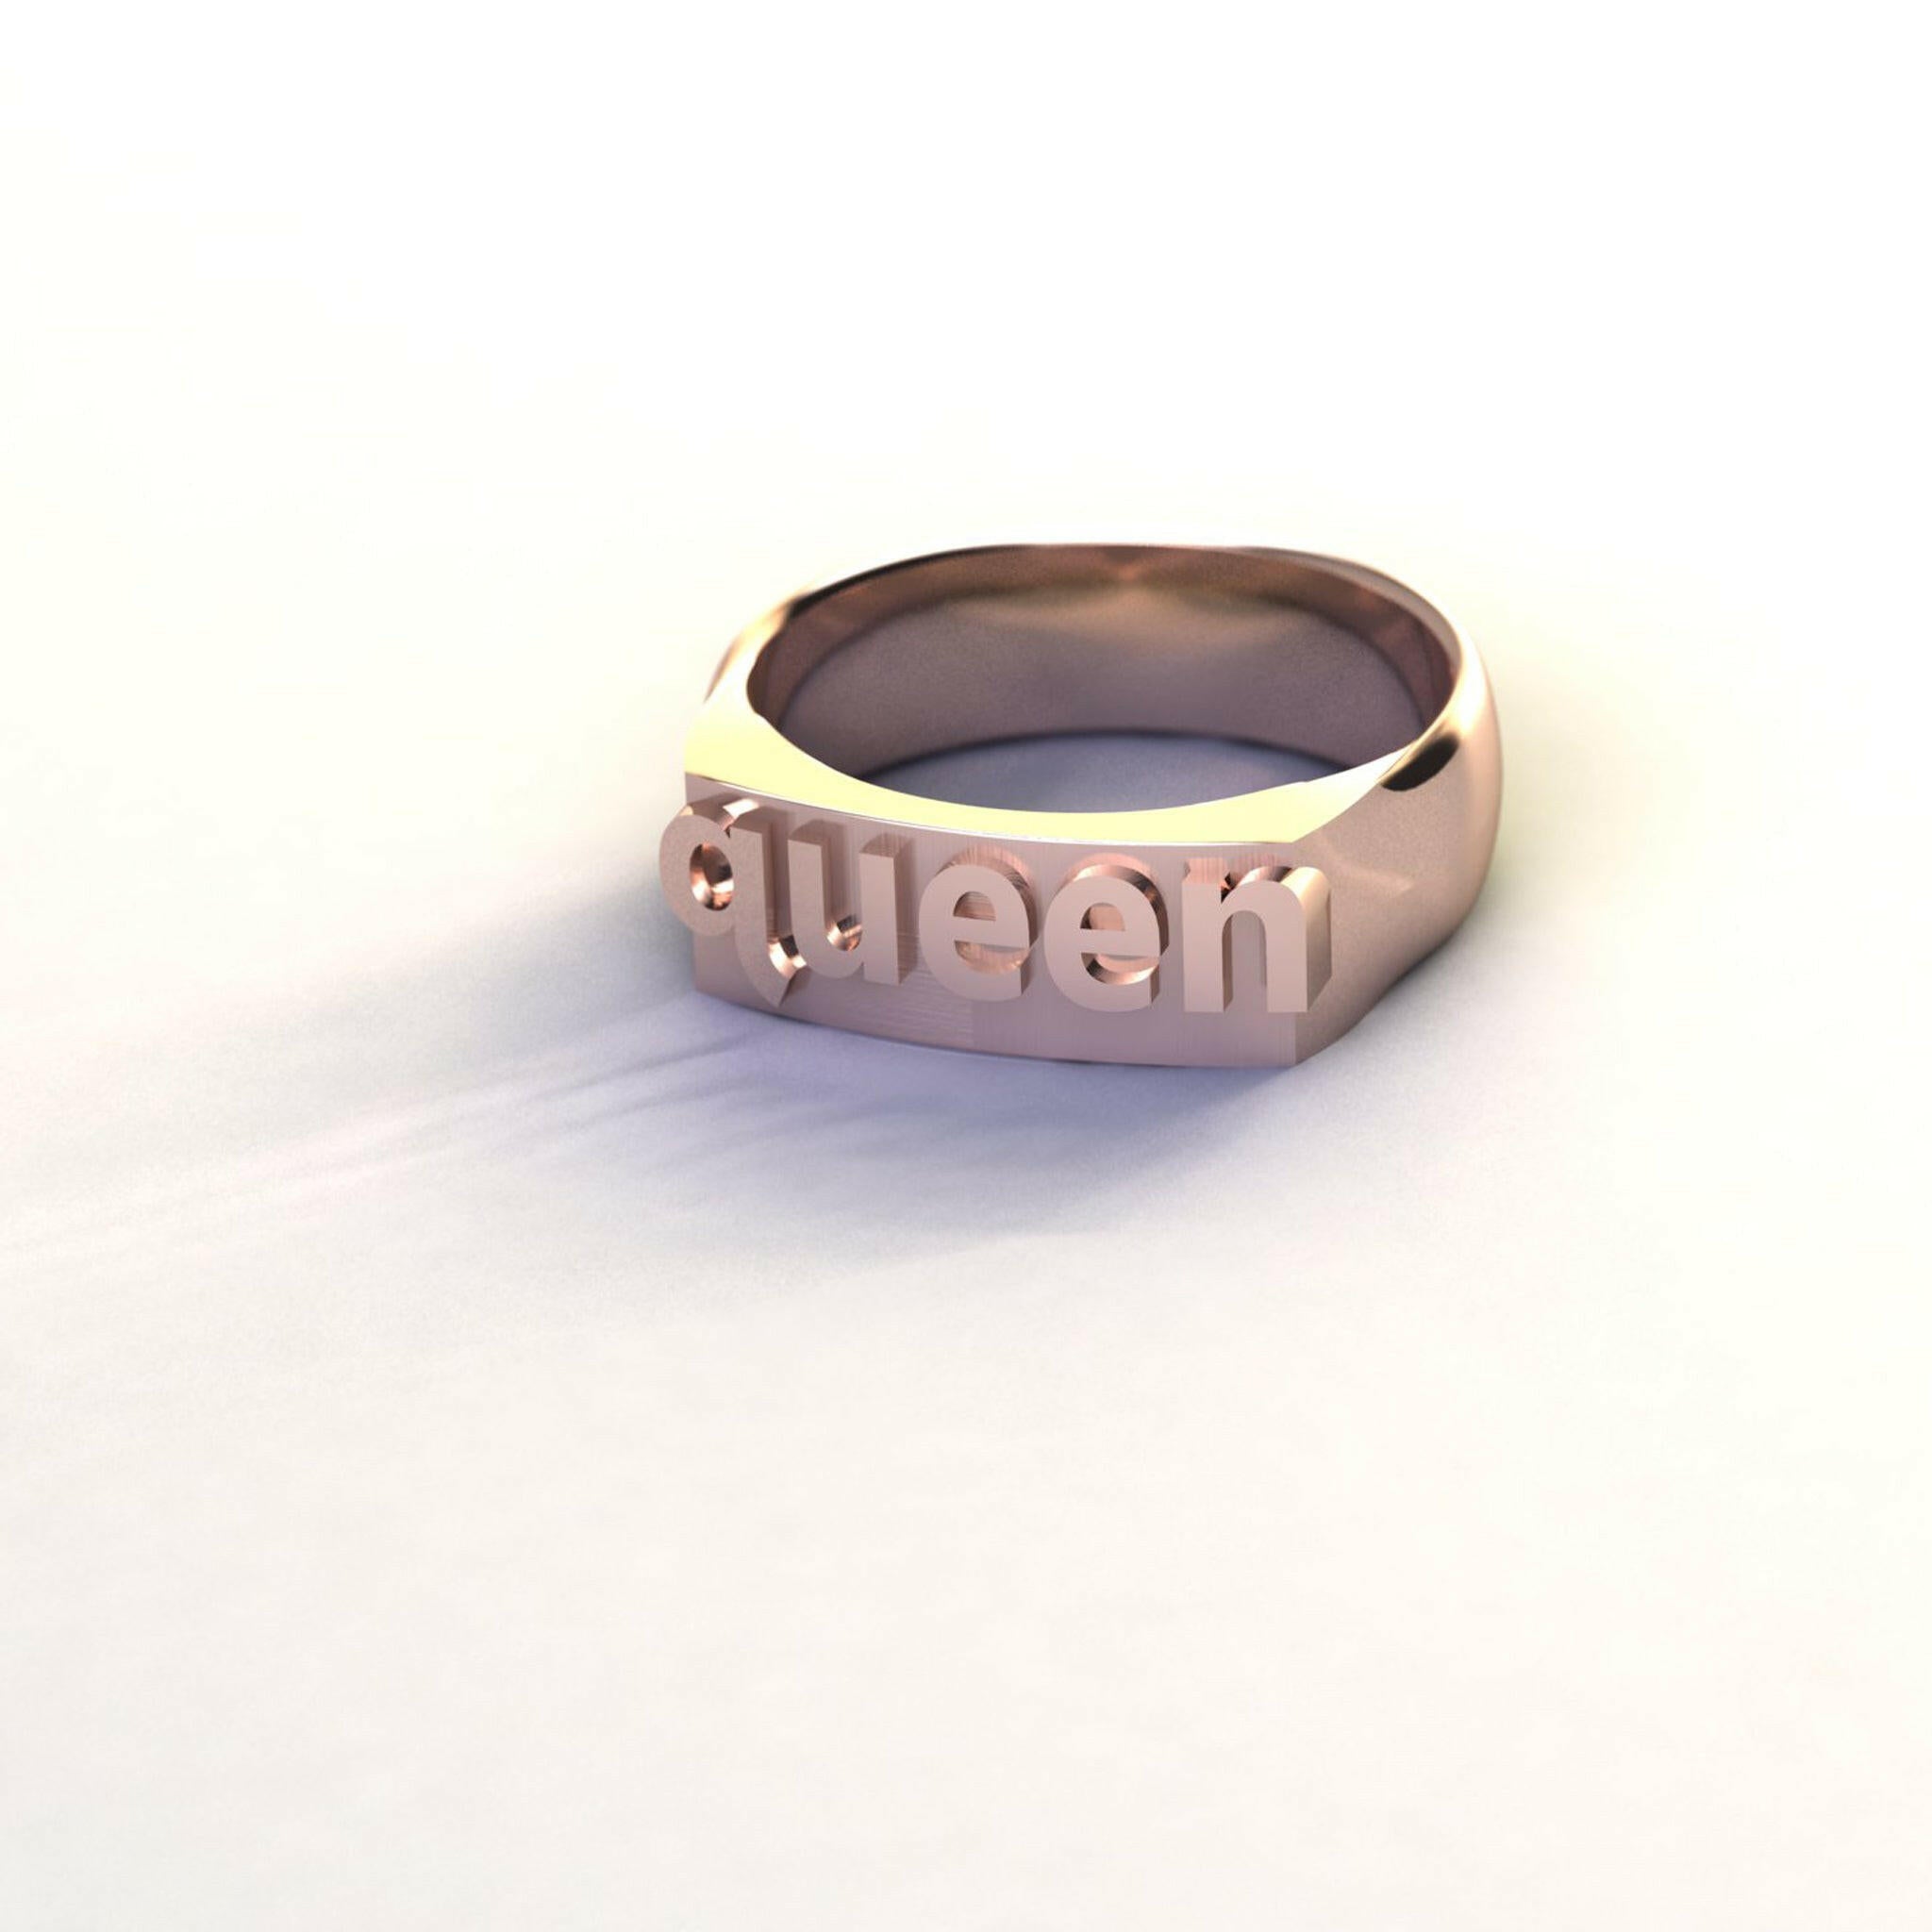 queen - Ilah Cibis Jewelry-Rings